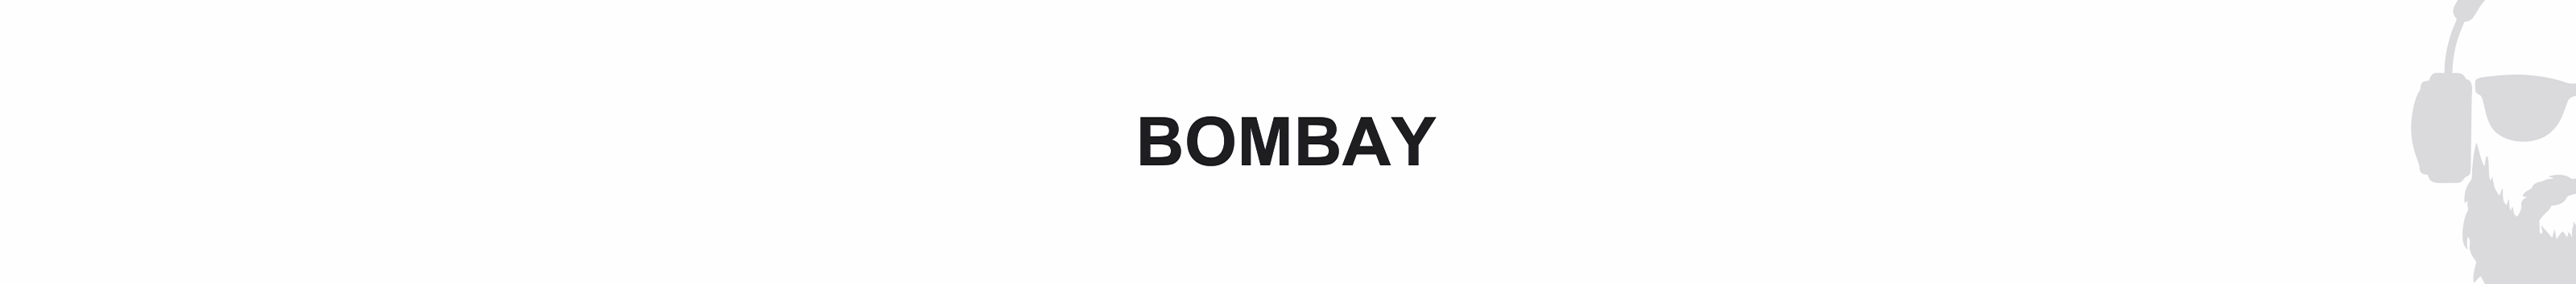 Alex Bombay's profile banner